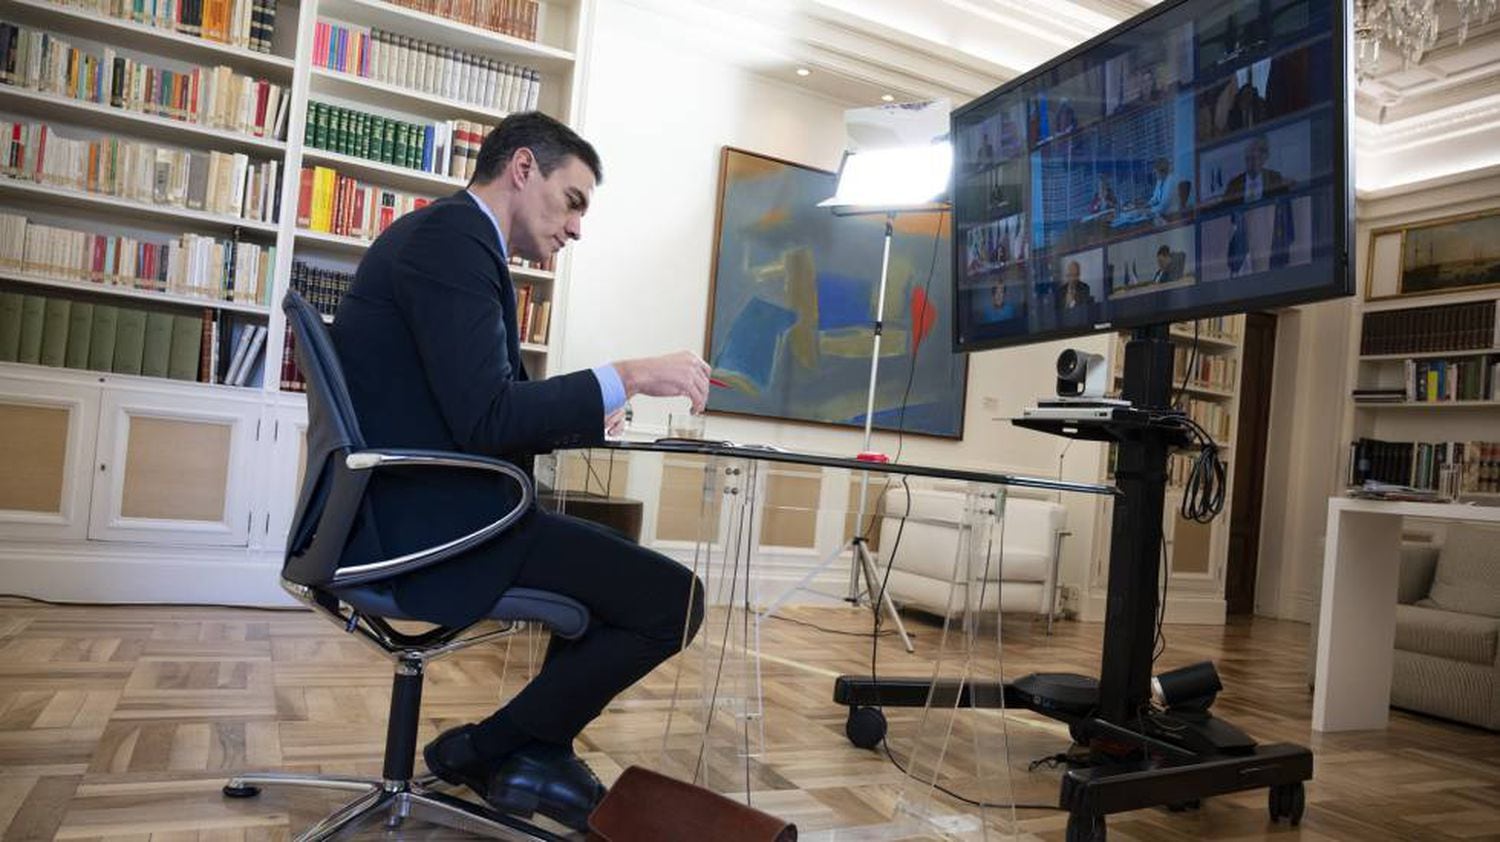 Pedro Sánchez participa en el Consejo Europeo por videoconferencia, el pasado 26 de marzo.
 
 